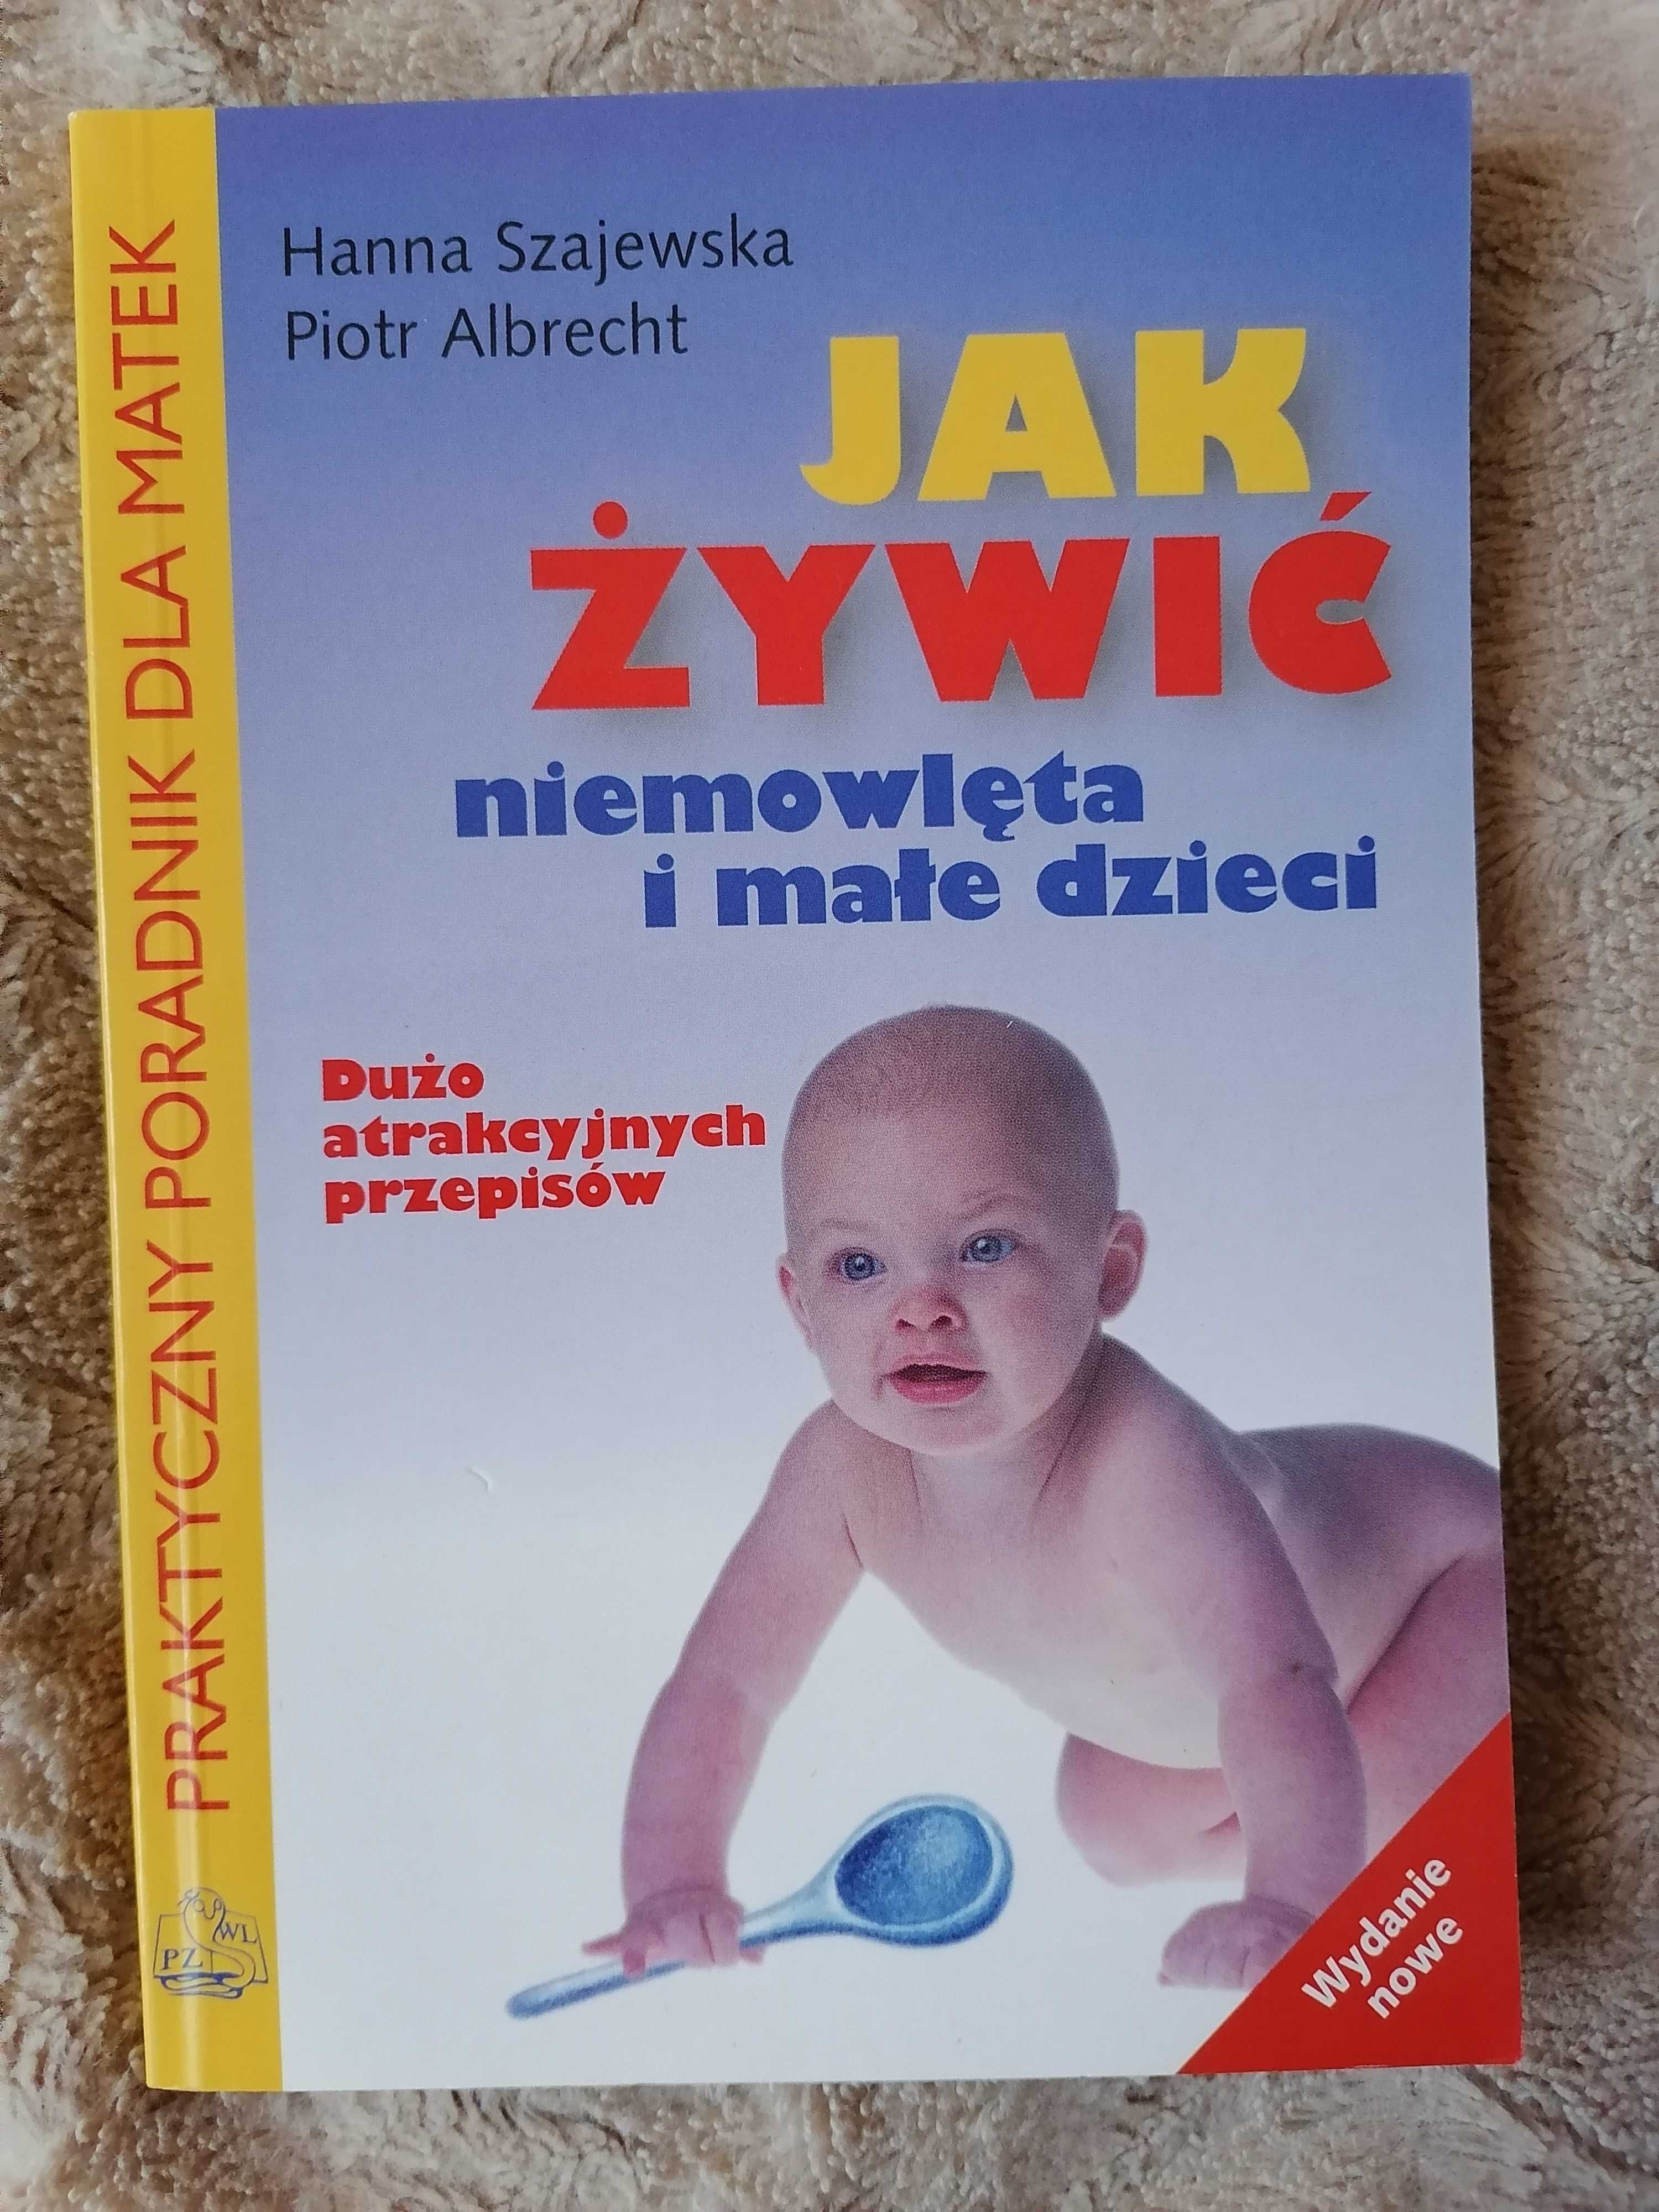 Książka "Jak żywić niemowlęta i małe dzieci" Poradnik z przepisami